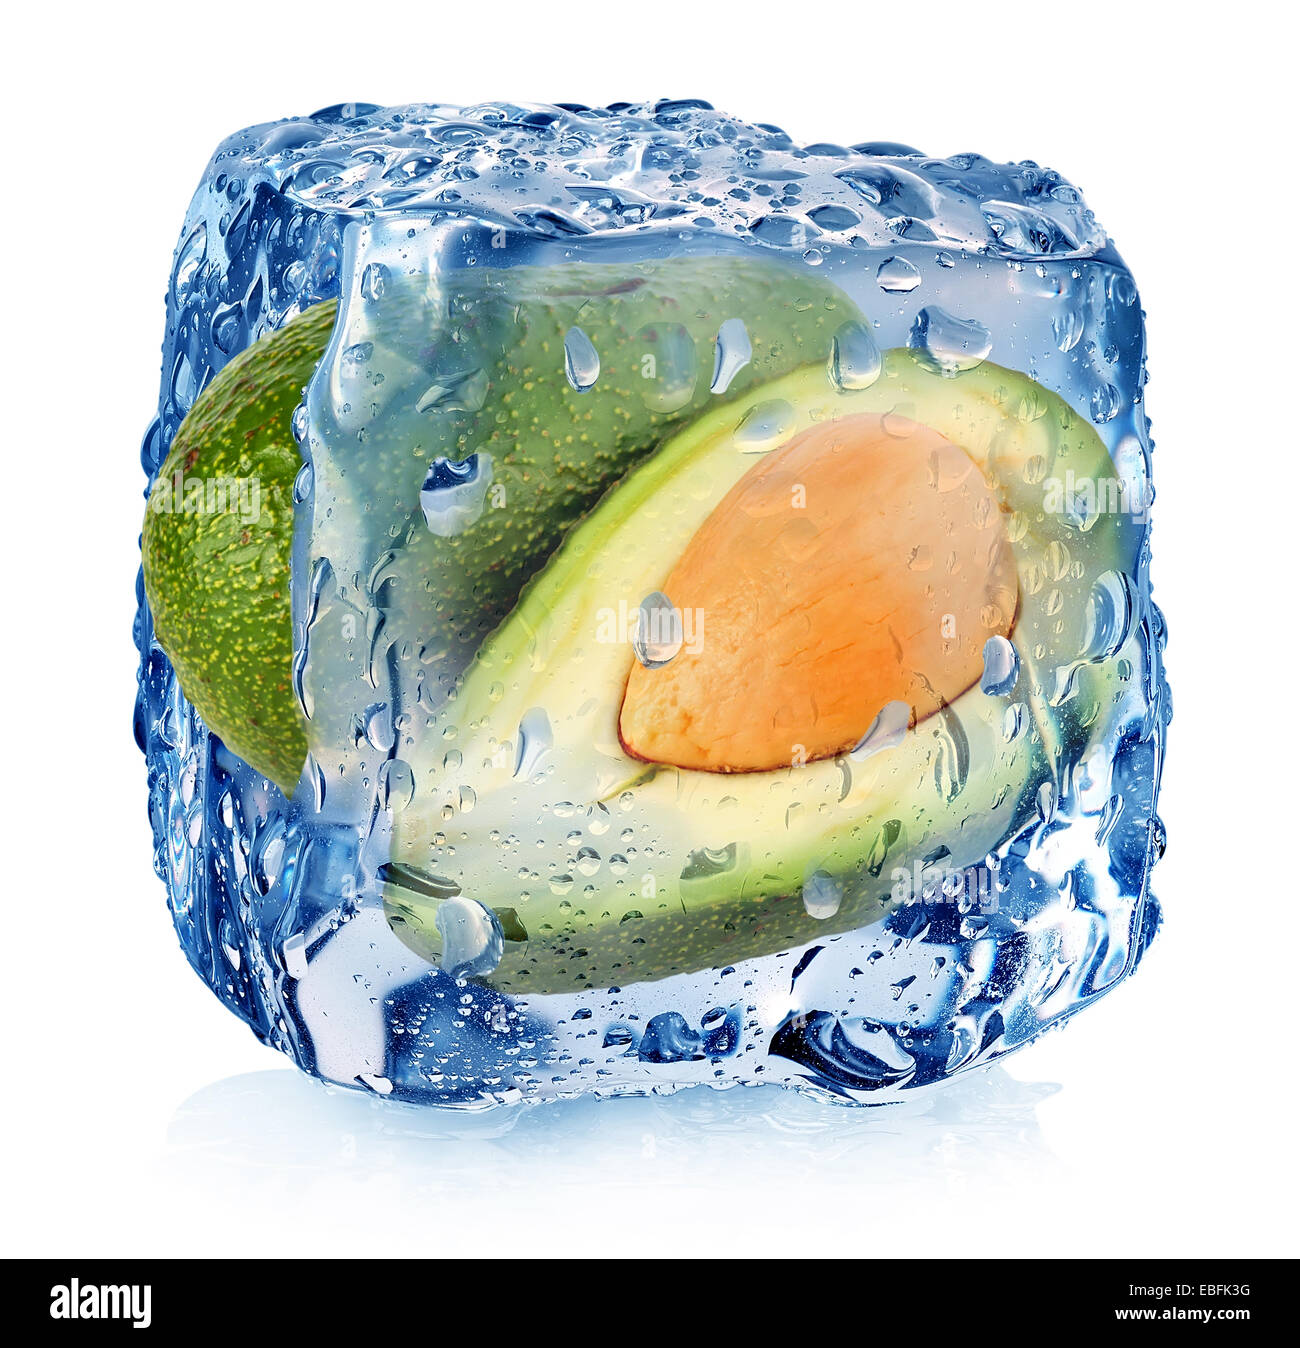 Aguacate en cubo de hielo aislado en blanco Foto de stock